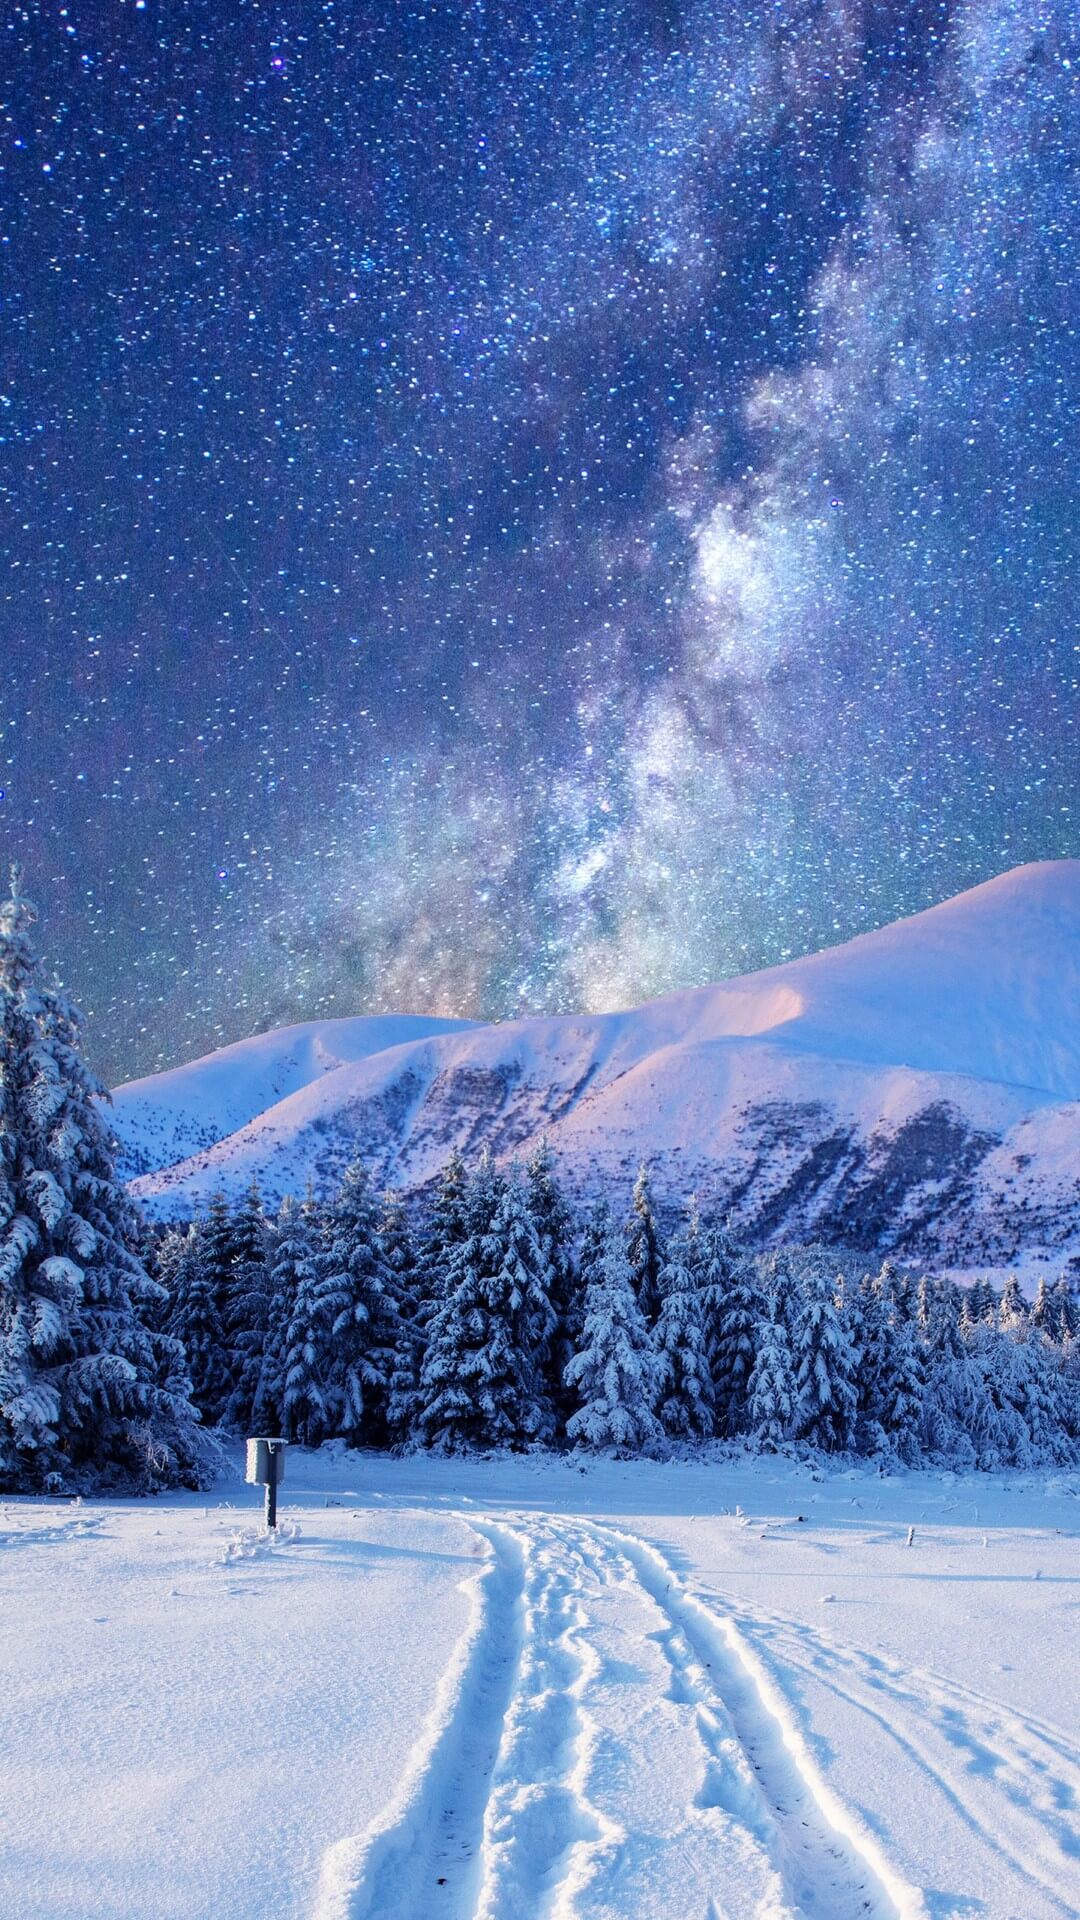 Thêm hiệu ứng động tuyết rơi đẹp mắt trên hình ảnh cho mùa Giáng Sinh Báo Dân trí